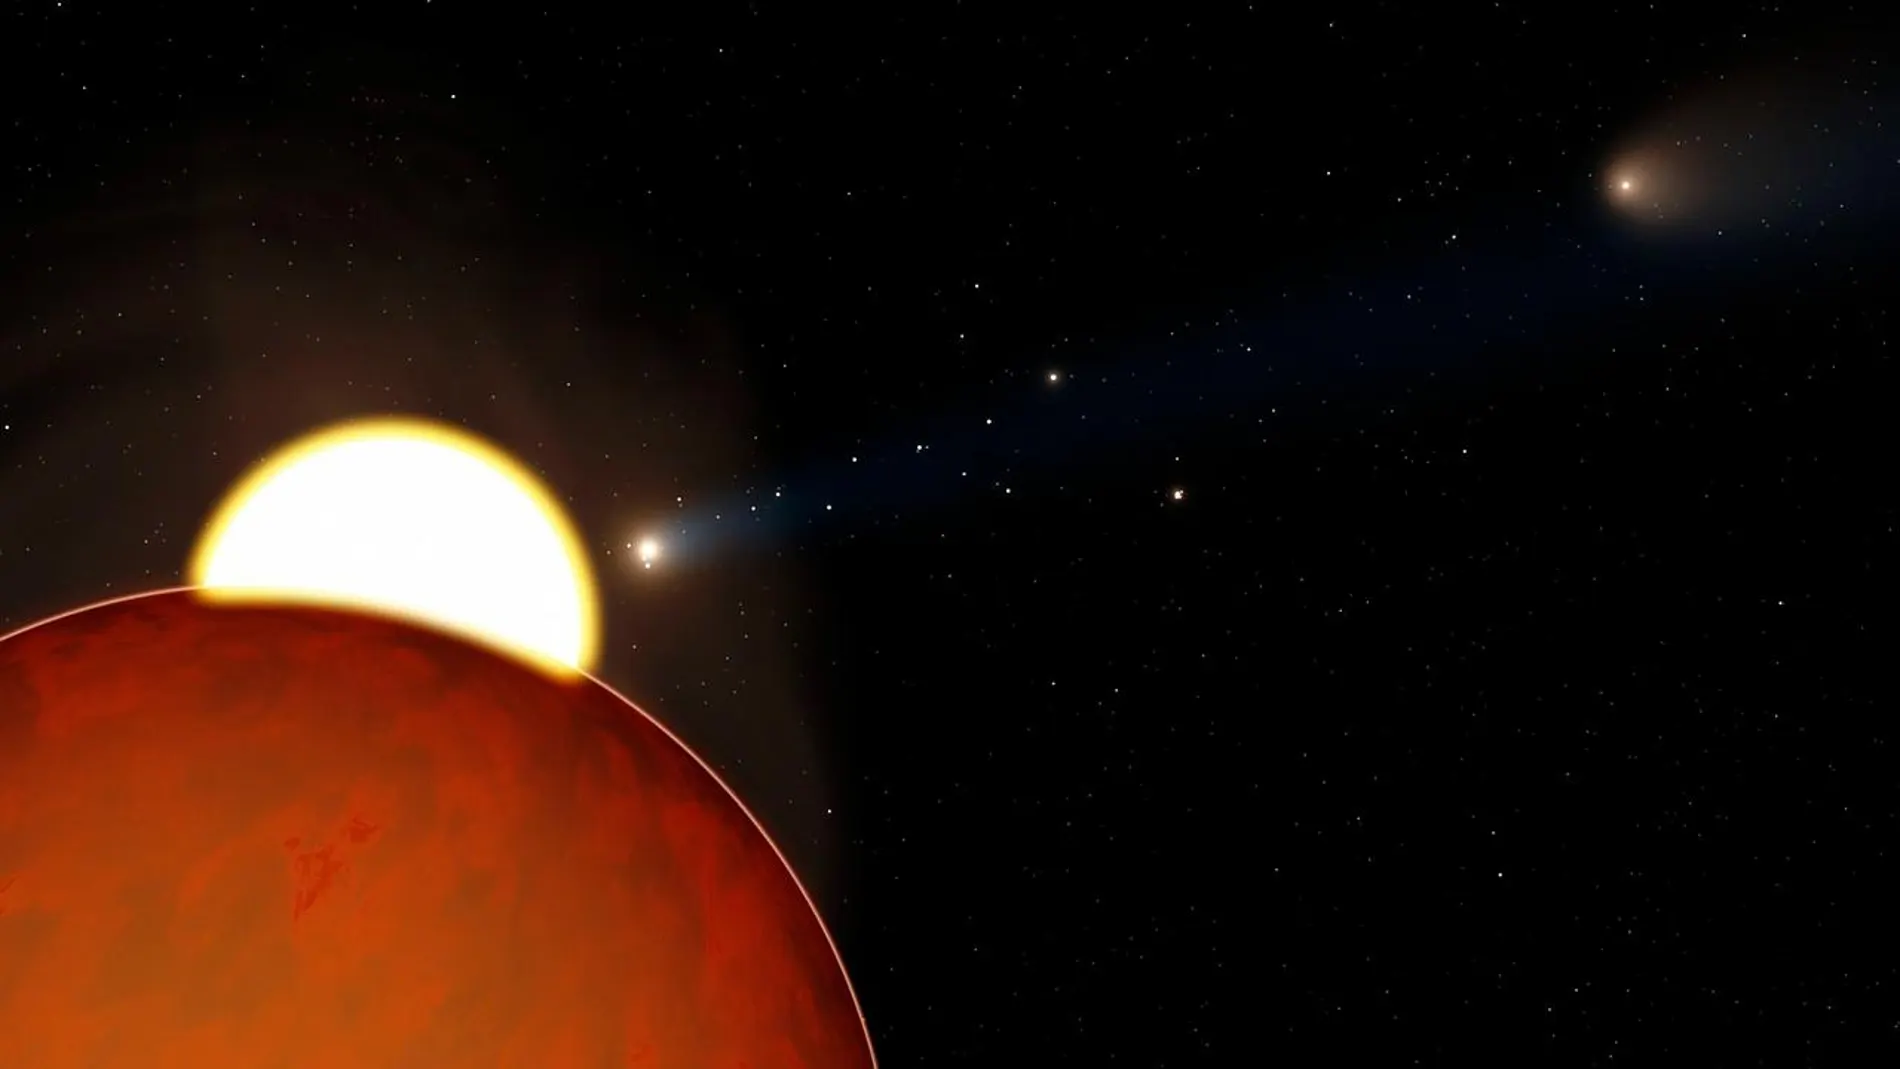 La primera confirmación de un exoplaneta orbitando una estrella similar al sol fue en 1995